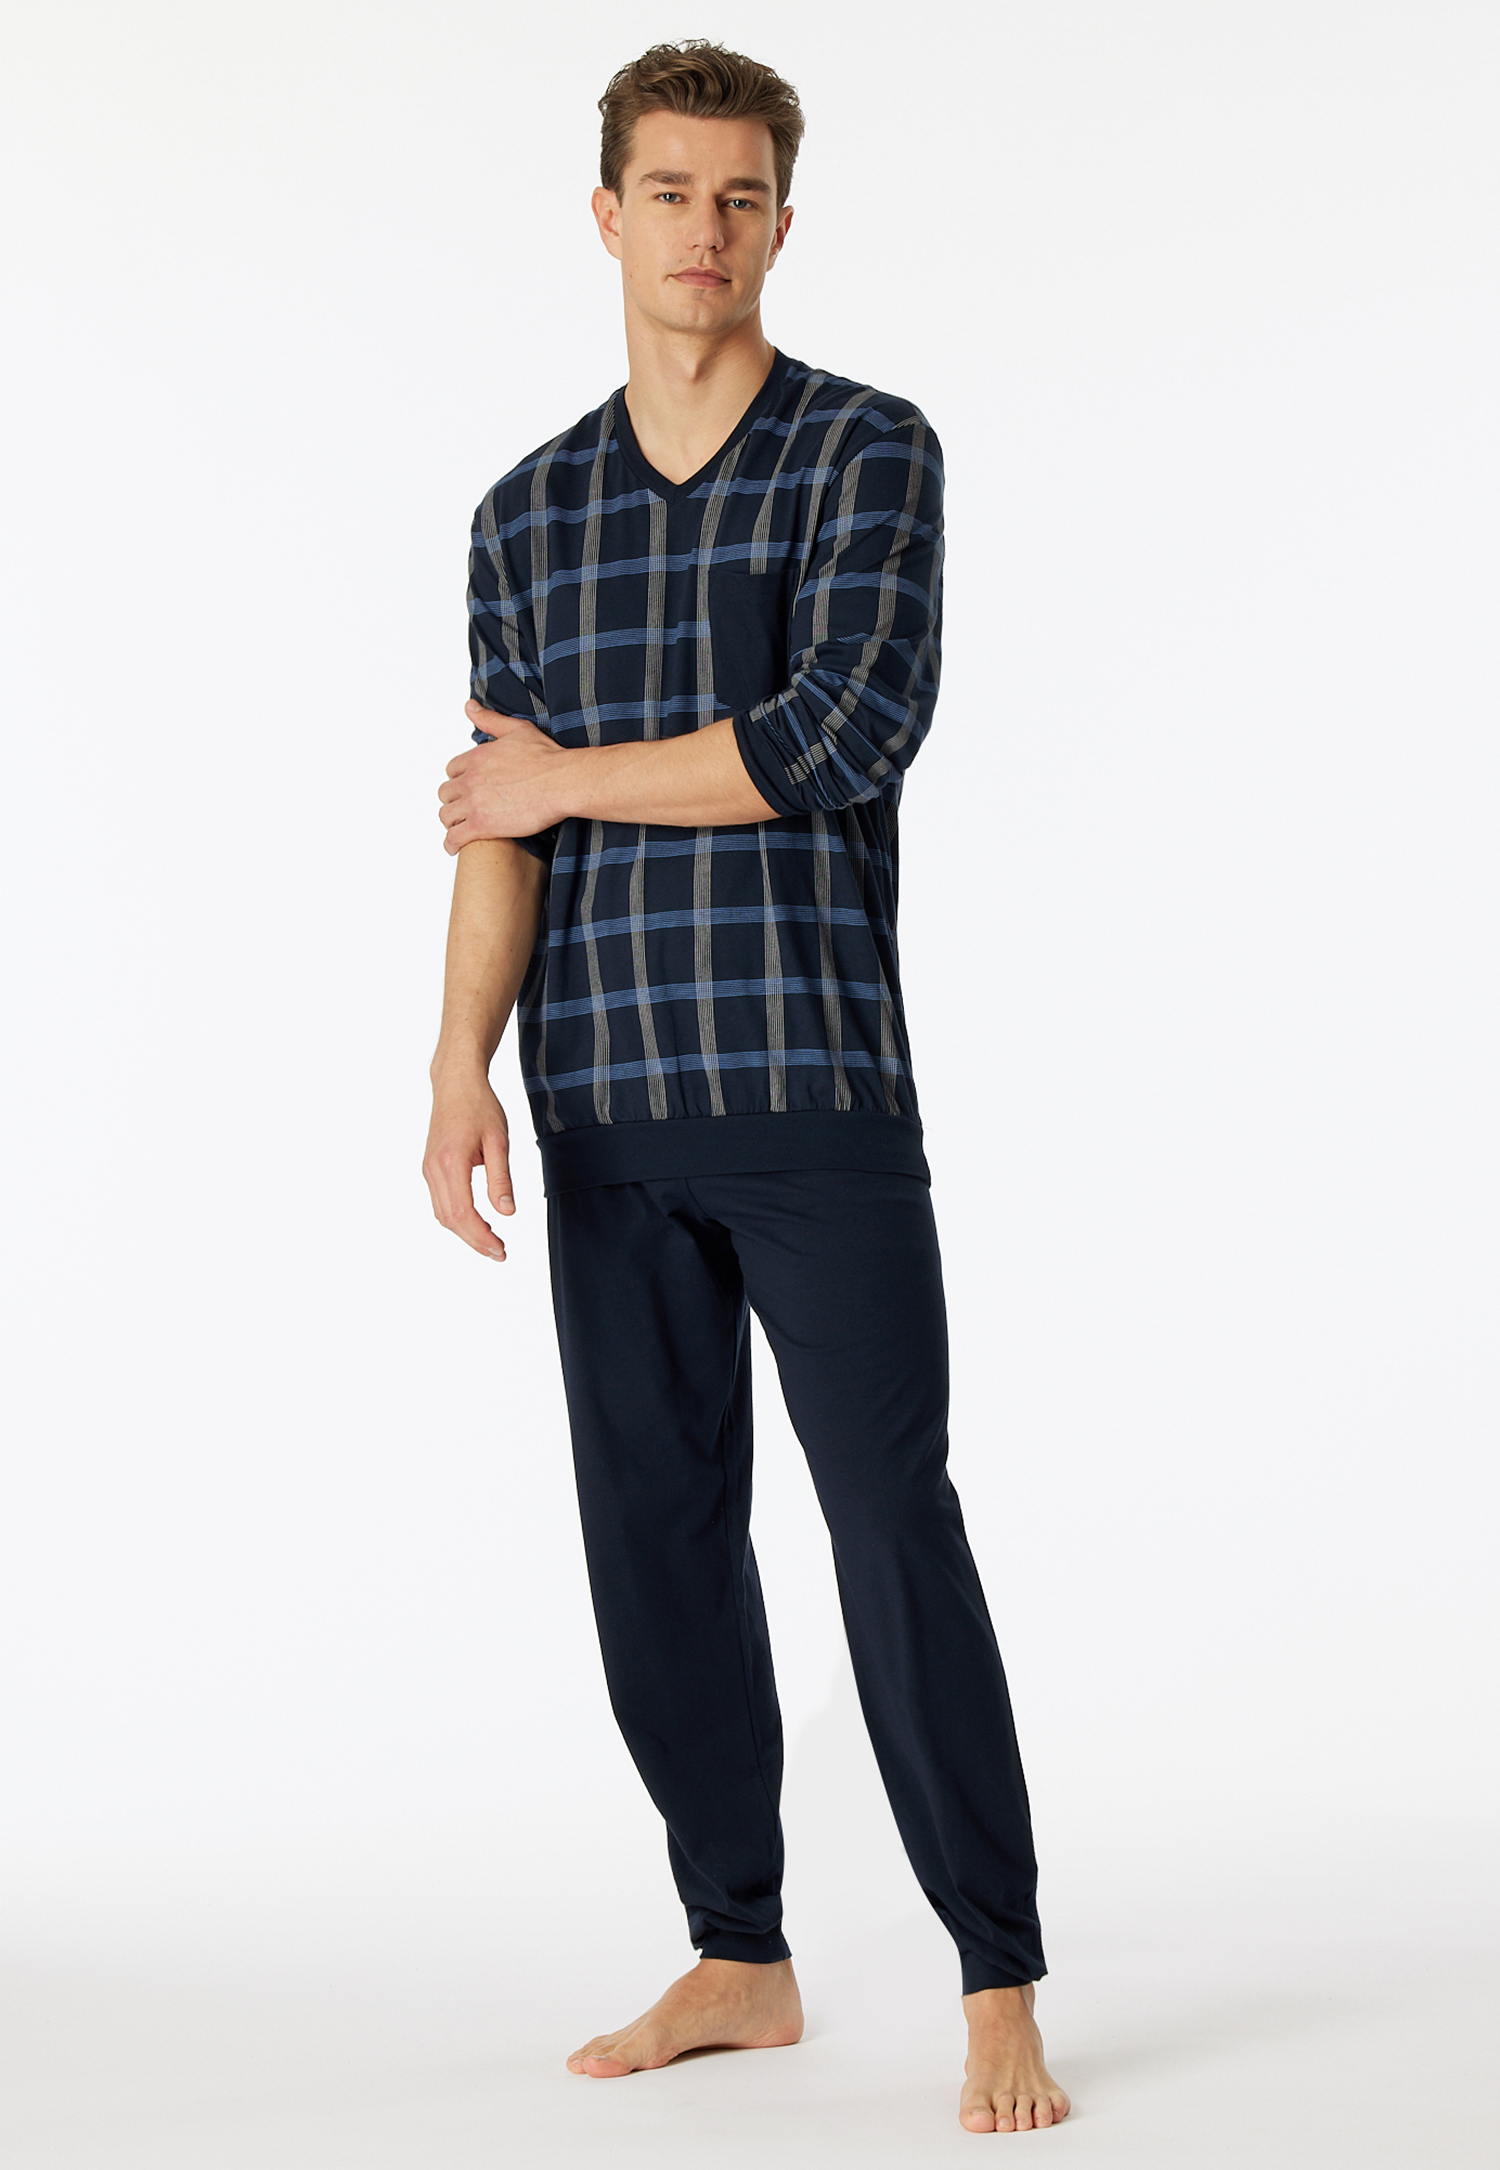 Schlafanzug lang Organic Cotton V-Ausschnitt Bündchen Brusttasche nachtblau kariert - Comfort Nightwear 56 von Schiesser